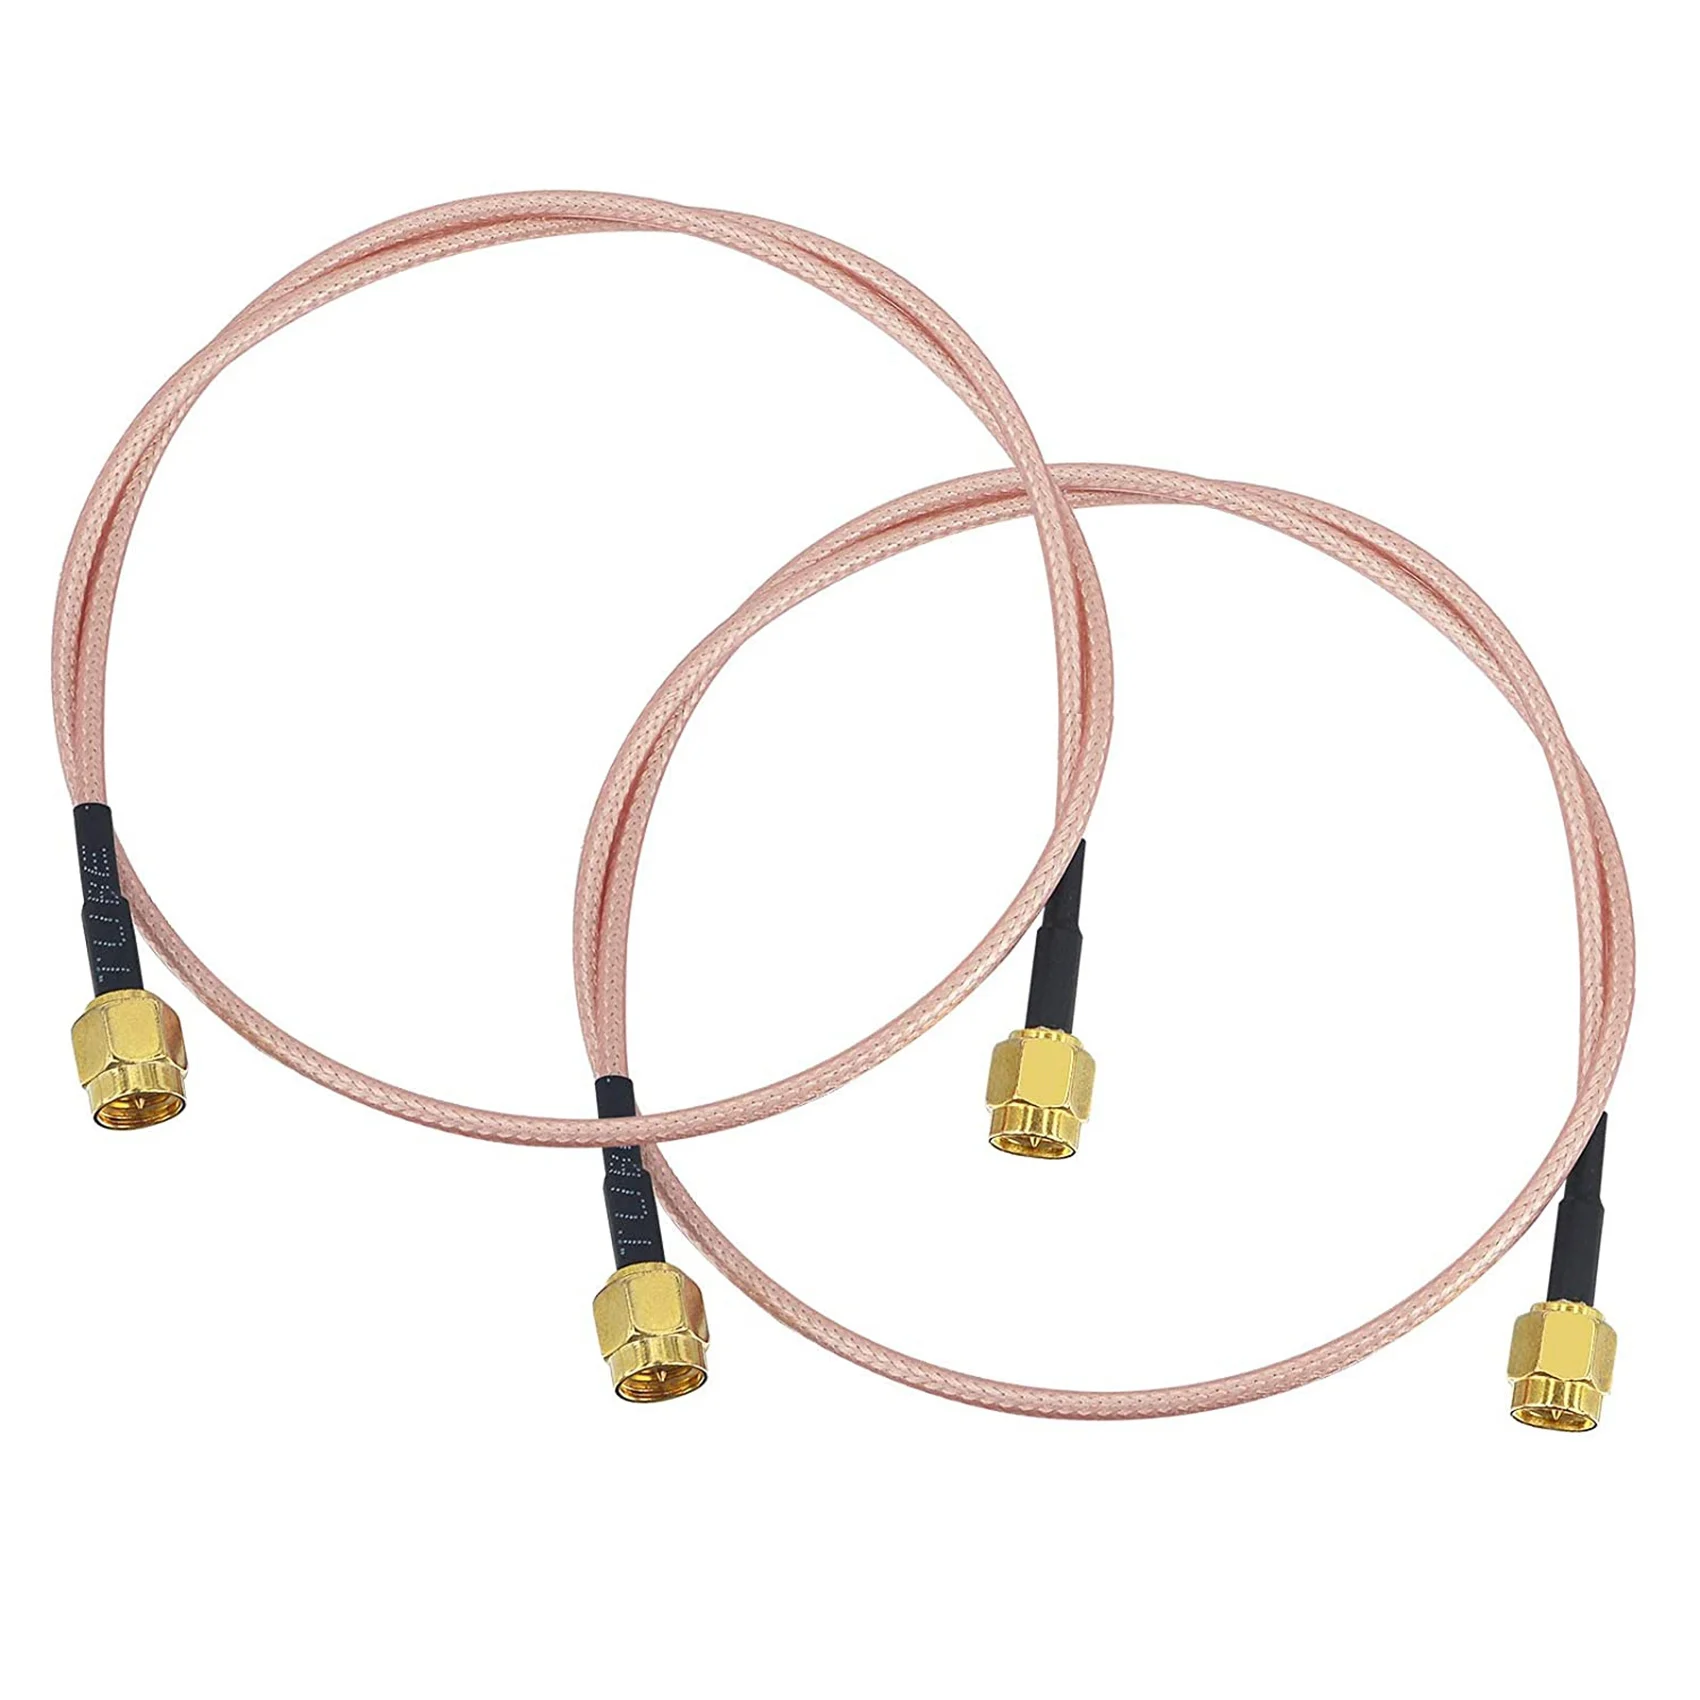 

Коаксиальный кабель с антенной, разъем SMA типа «папа», 50 см, RG316